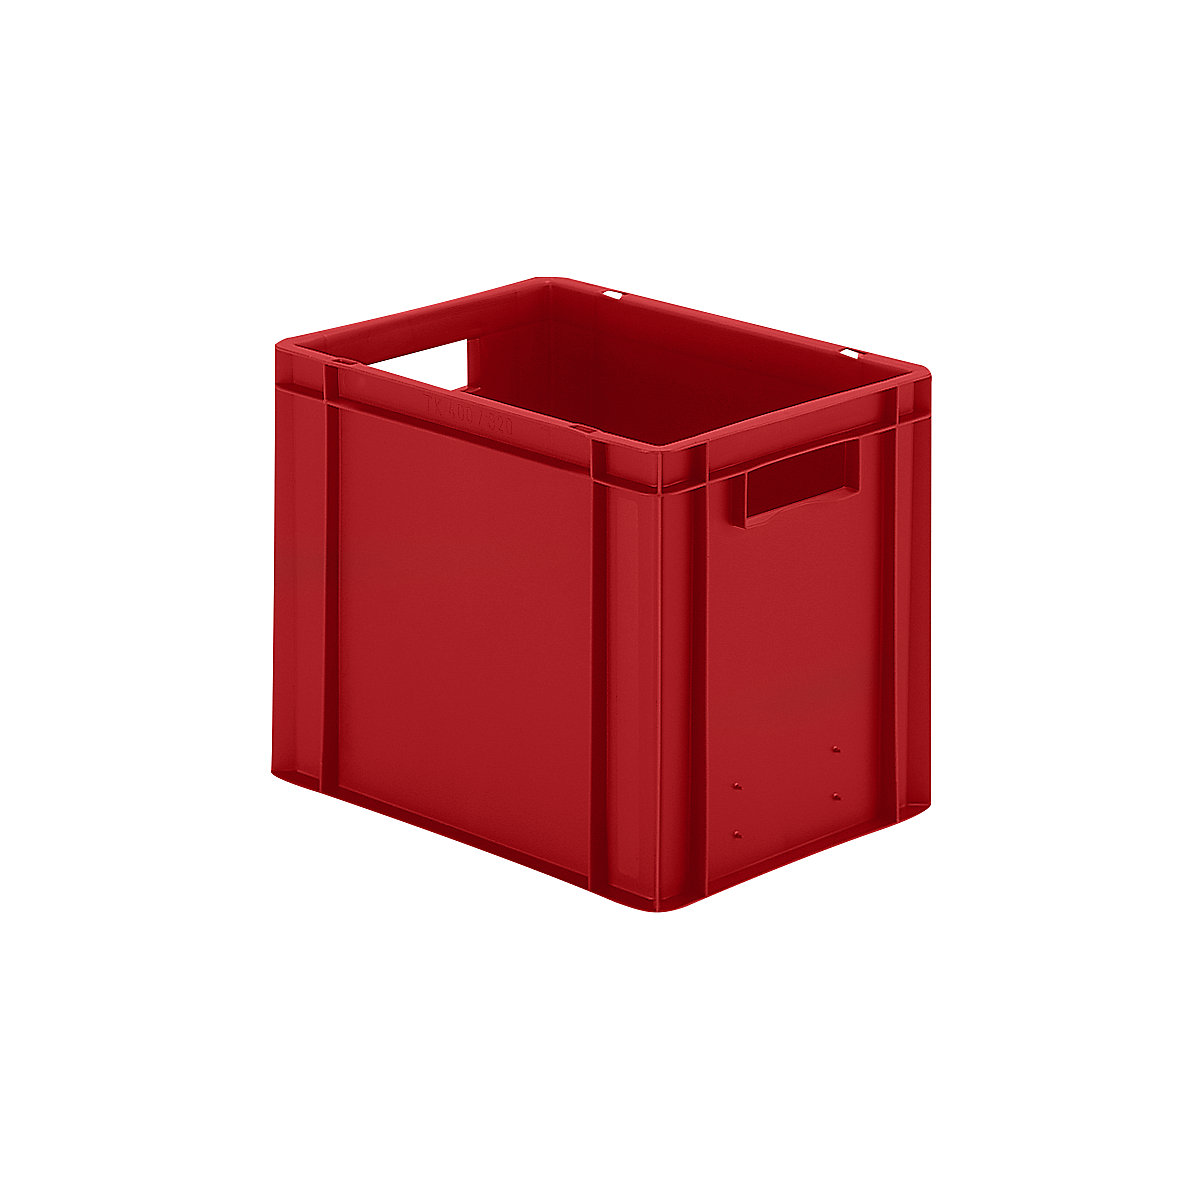 Euro-Format-Stapelbehälter, Wände und Boden geschlossen, LxBxH 400 x 300 x 320 mm, rot, VE 5 Stk